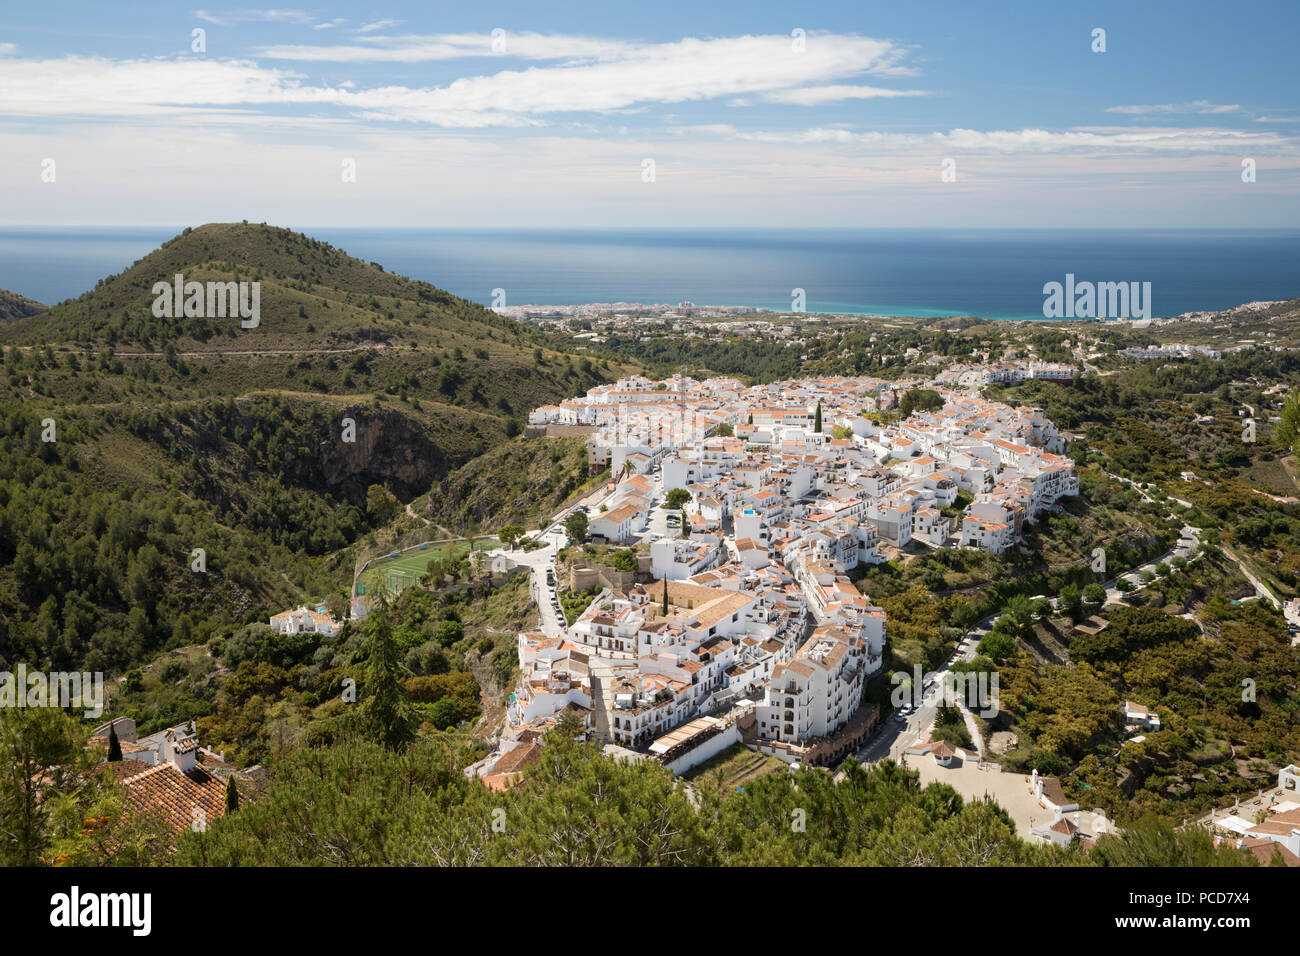 Vista su bianco villaggio andaluso al mare, Frigiliana, provincia di Malaga, Costa del Sol, Andalusia, Spagna, Europa Foto Stock